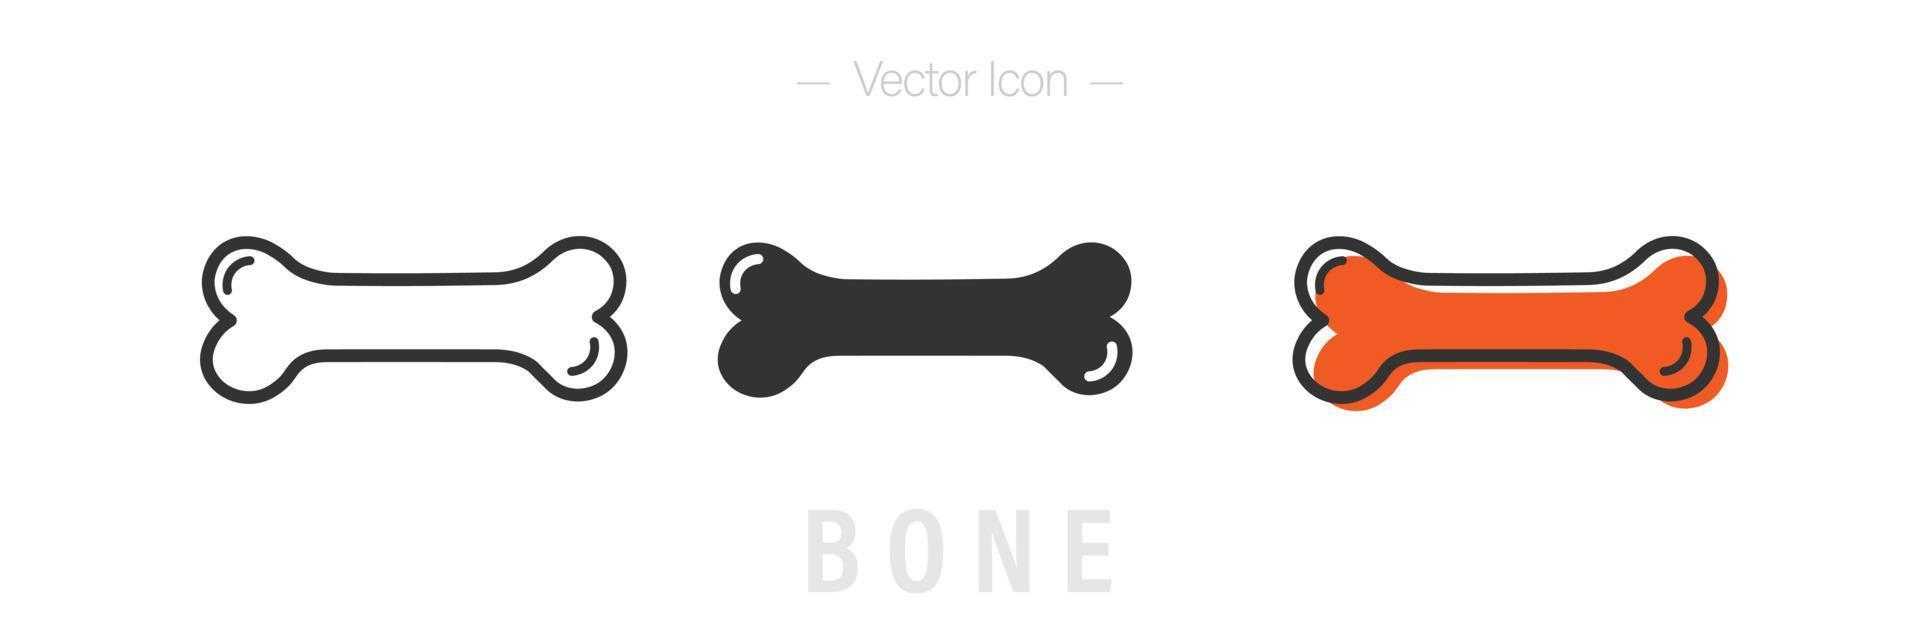 iconos planos y de línea de hueso de perro. ilustración de logotipo vectorial aislado. vector